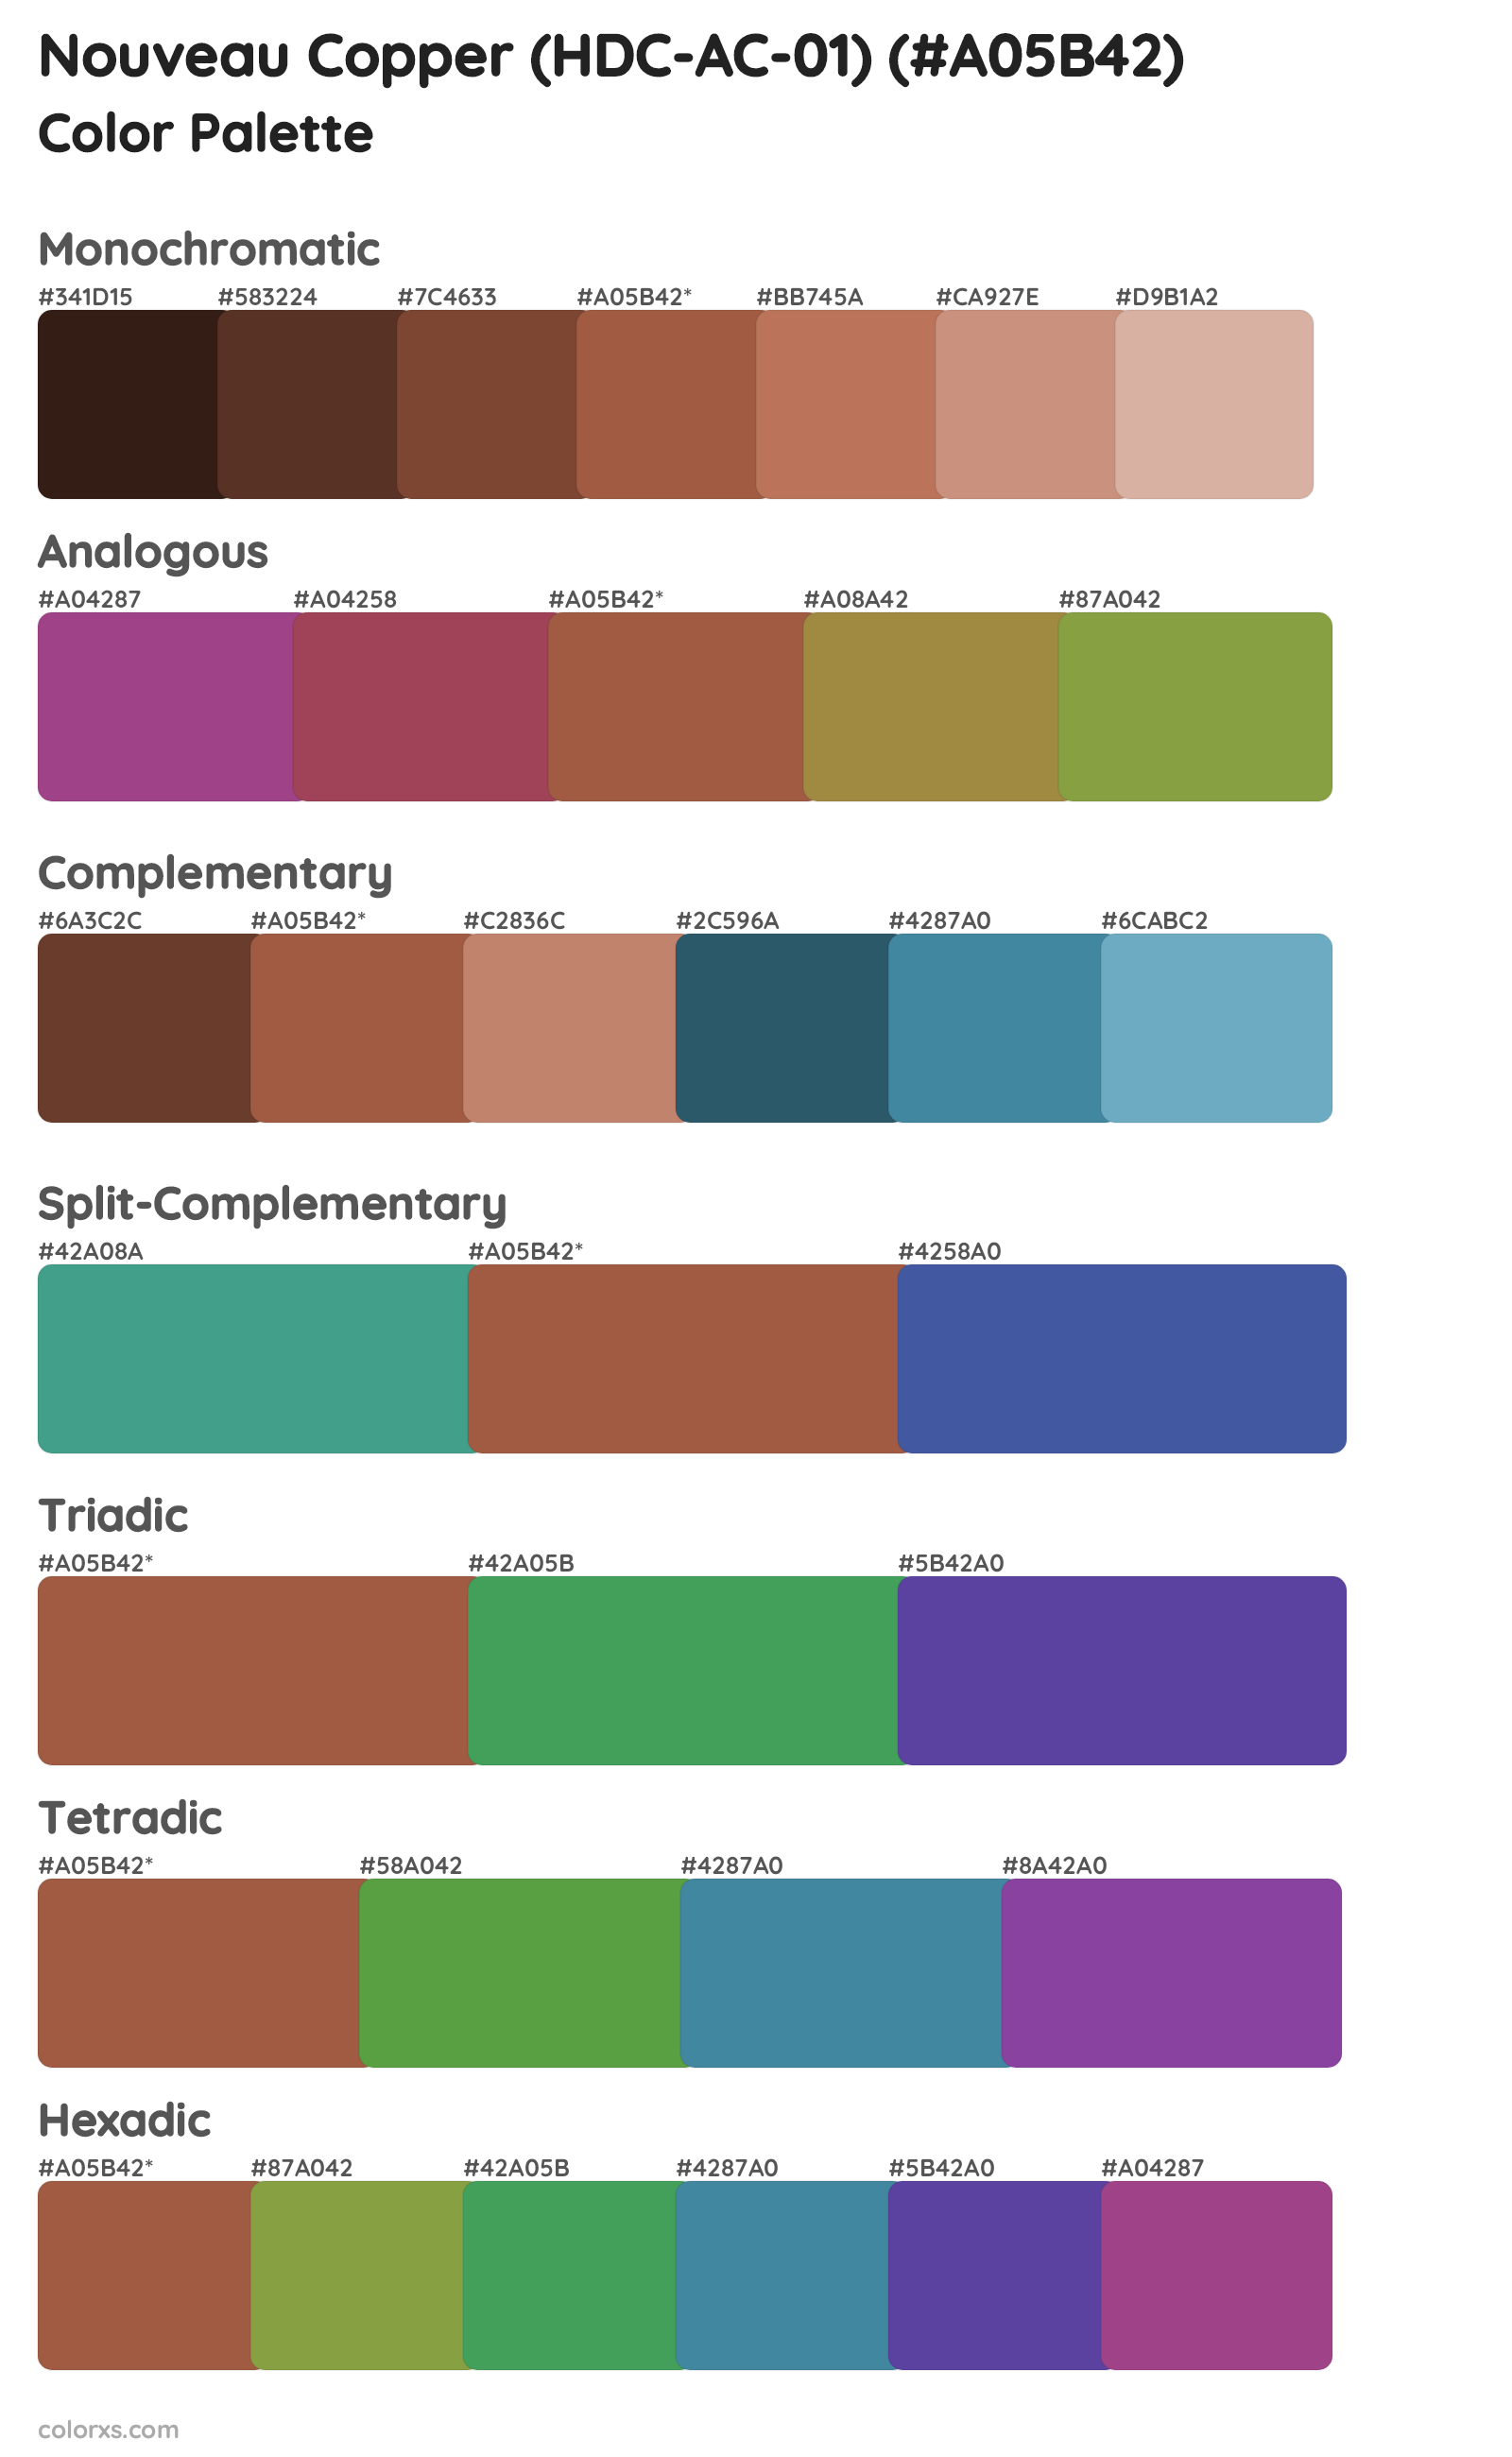 Nouveau Copper (HDC-AC-01) Color Scheme Palettes